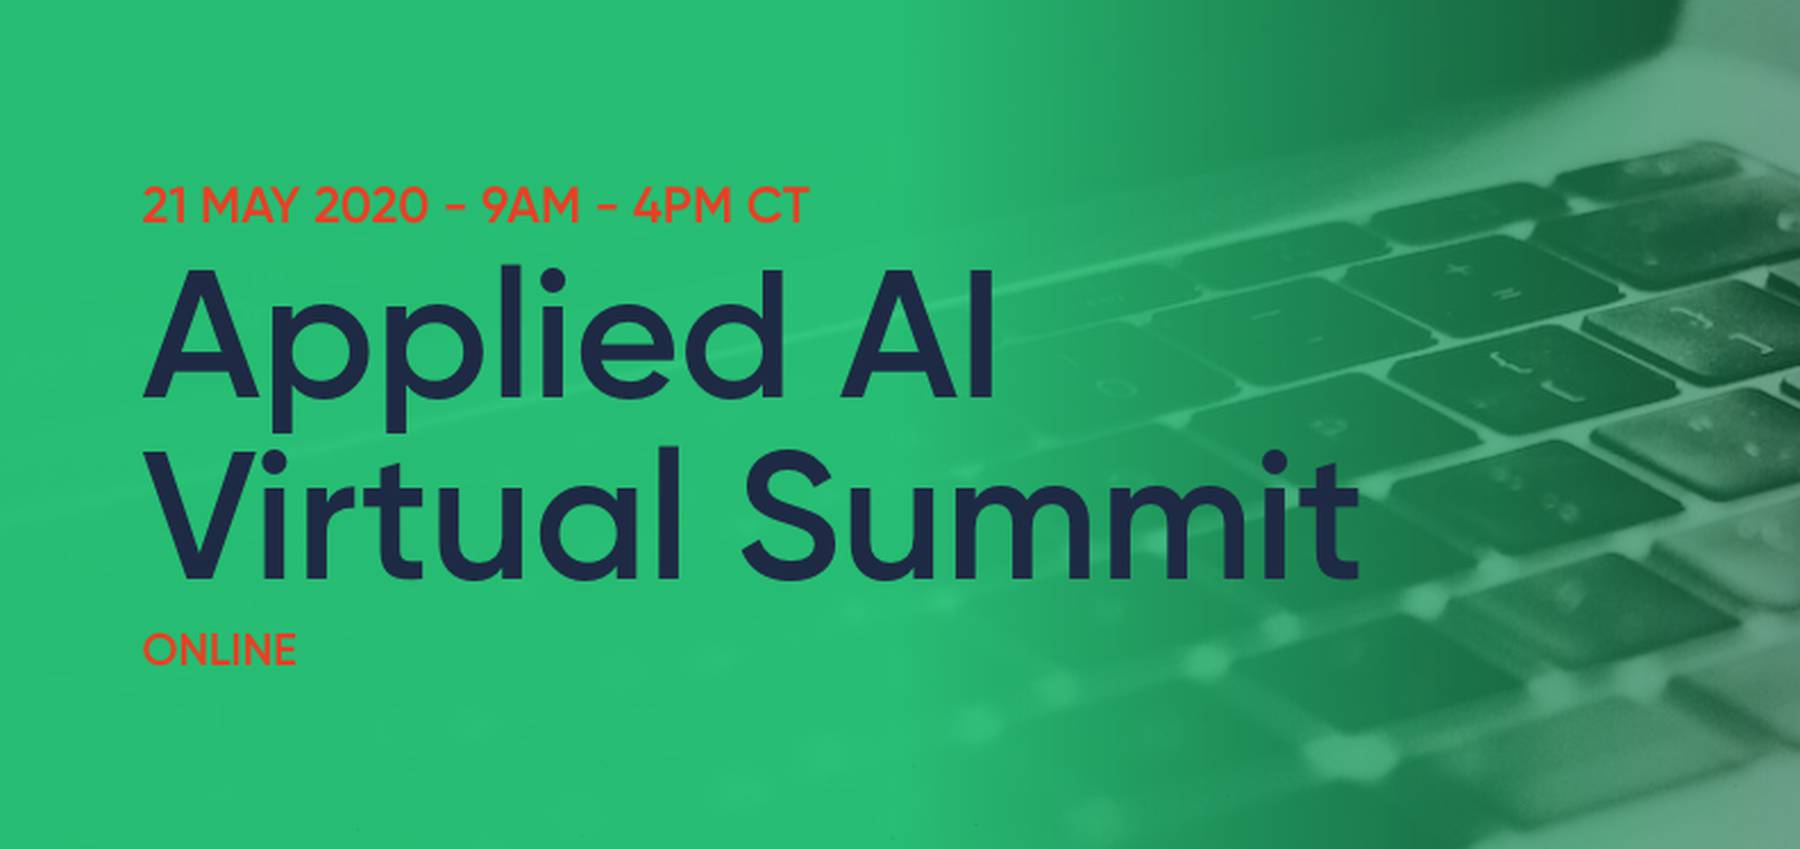 Applied AI Virtual Summit 2020